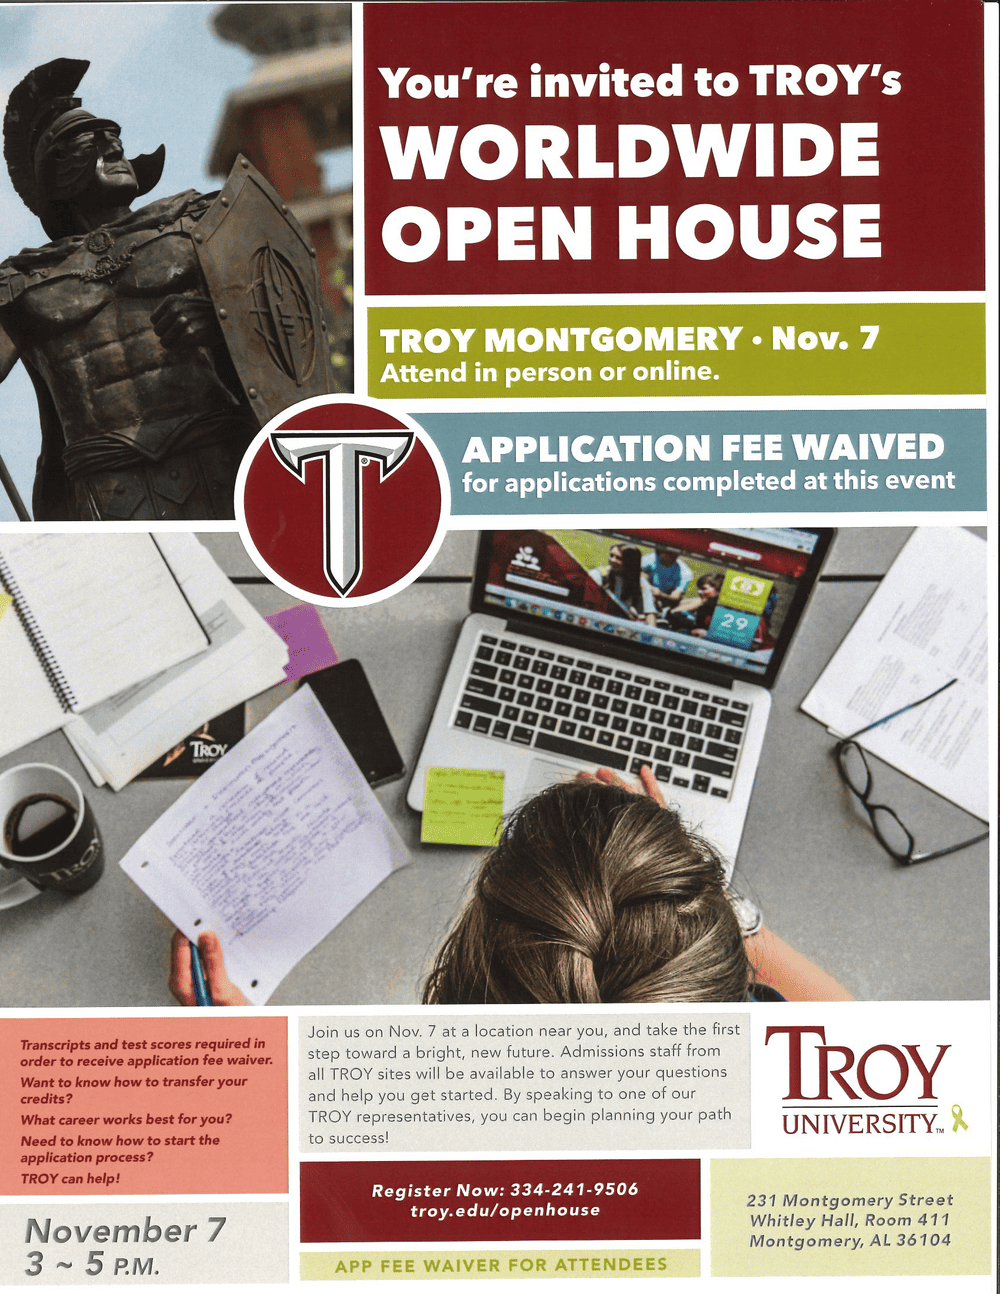 Troy University Worldwide Open House